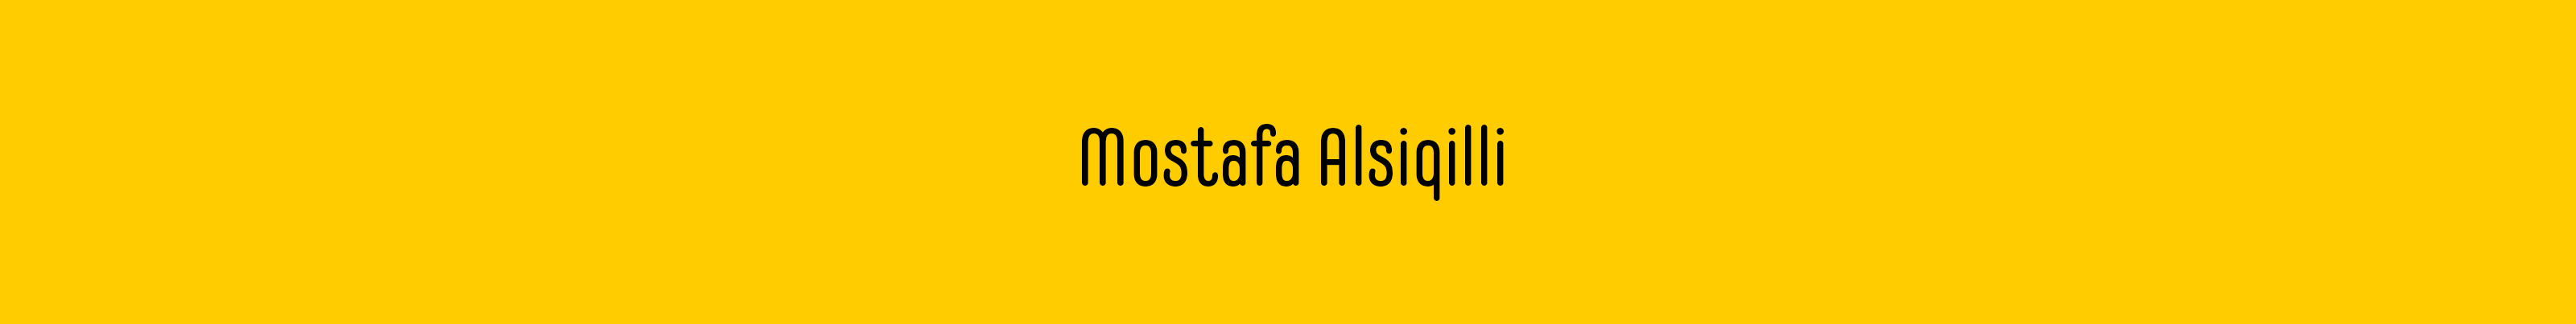 Mostafa Alsiqilli profil başlığı